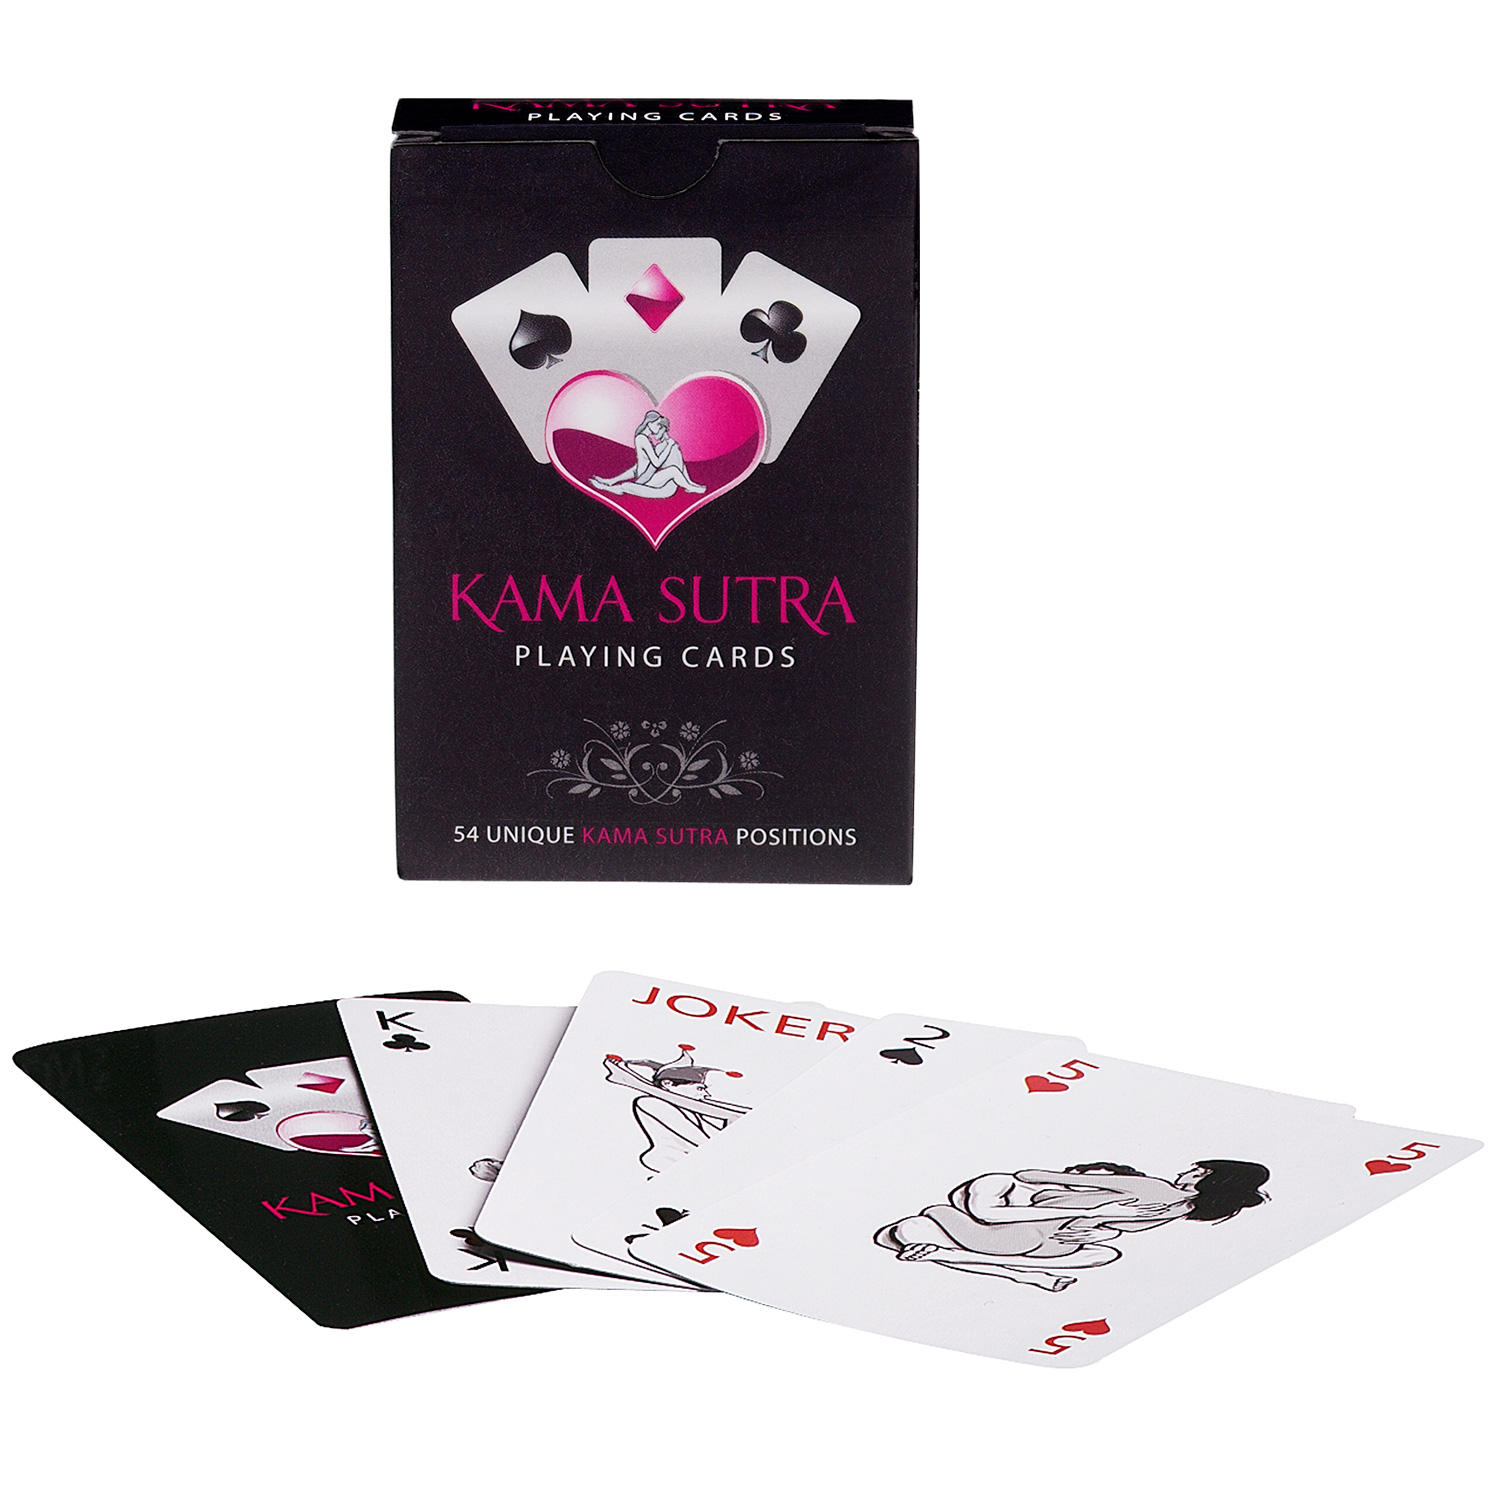 Kama Sutra Spelkort     - Blandade färger